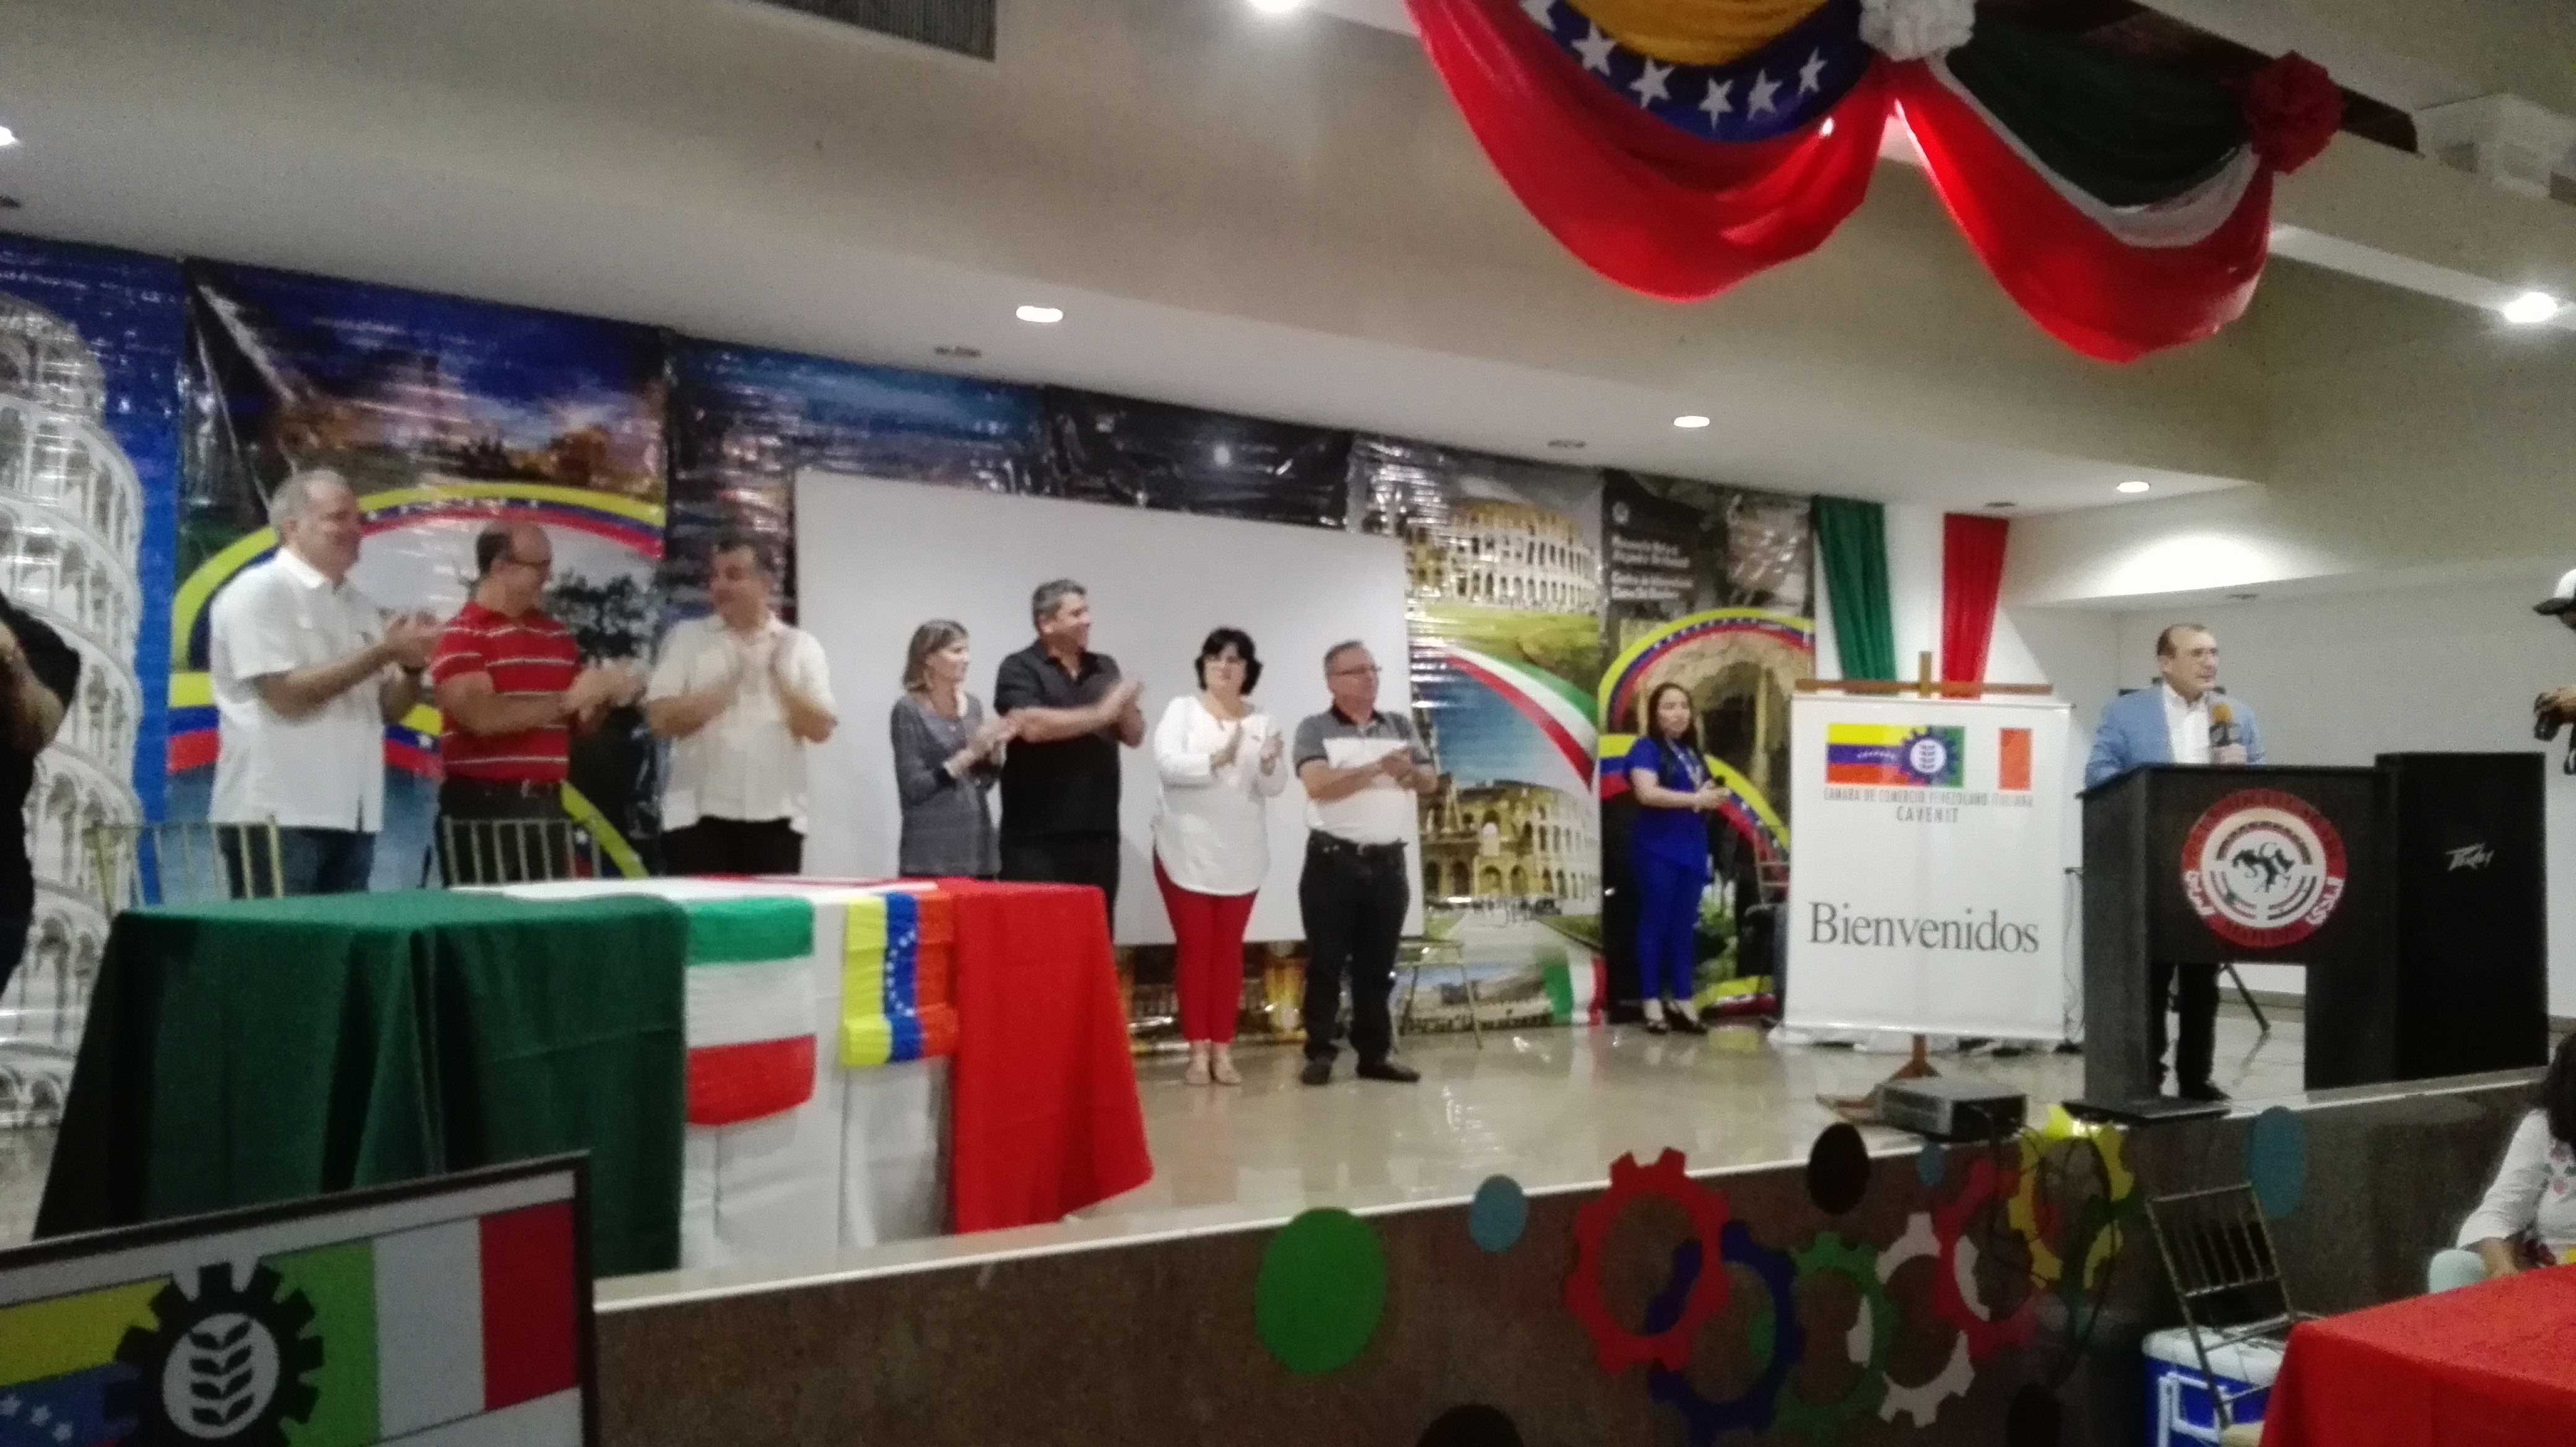 En el marco de su tercer aniversario, la seccional de Cavenit en Monagas organizó un concurrido evento que sirvió de vitrina para exponer los emprendimientos que se desarrollan en esta región del país. En la oportunidad se compartieron experiencias y se reafirmaron los lazos binacionales entre Italia y Venezuela.